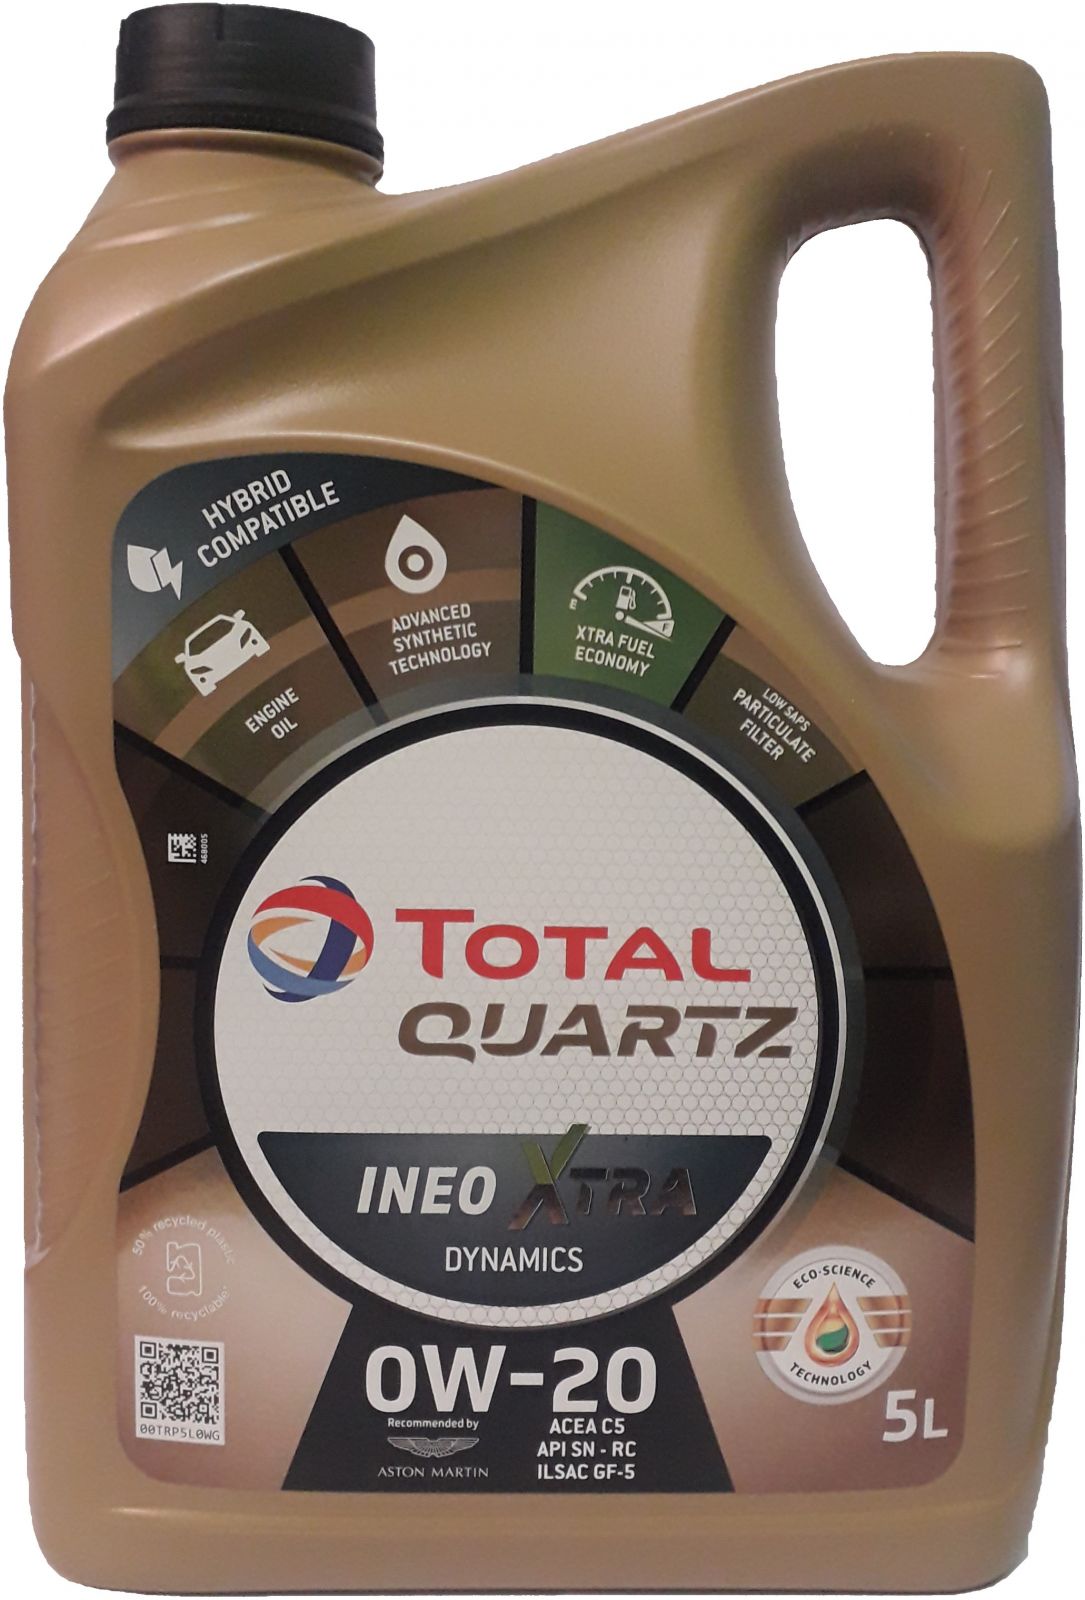 Total Quartz Ineo Xtra Dynamics 0W-20 5L